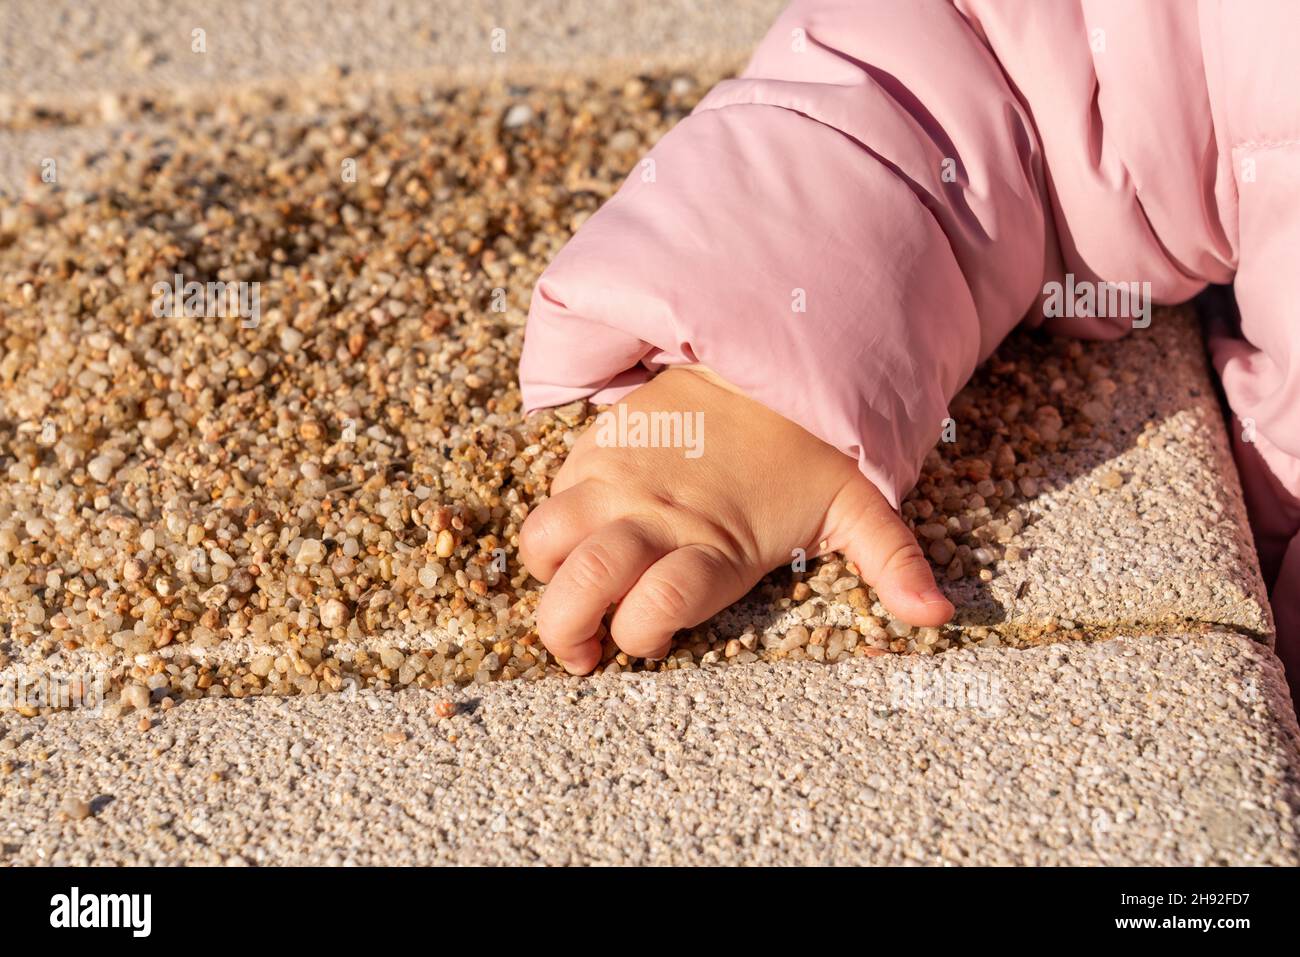 la main des enfants prend une poignée de sable Banque D'Images